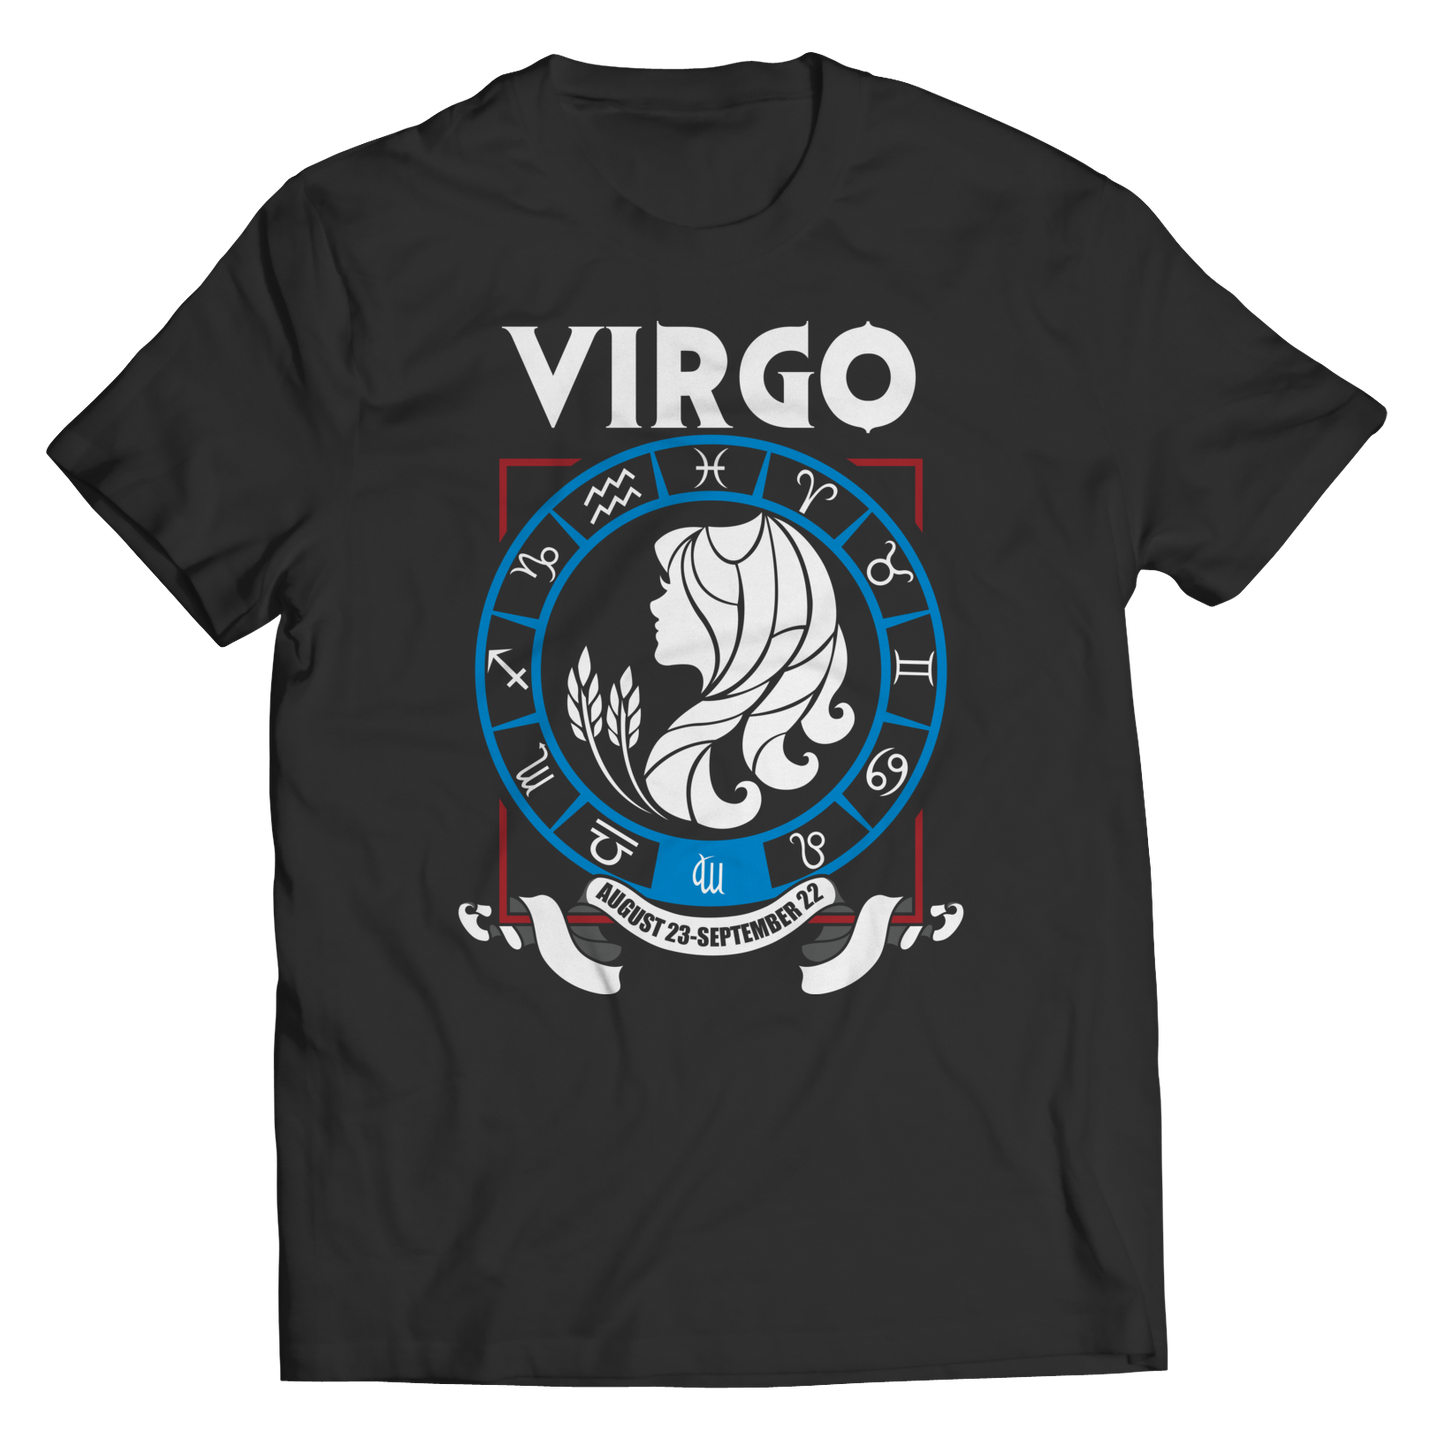 Virgo Shirt - Zodiac Collection